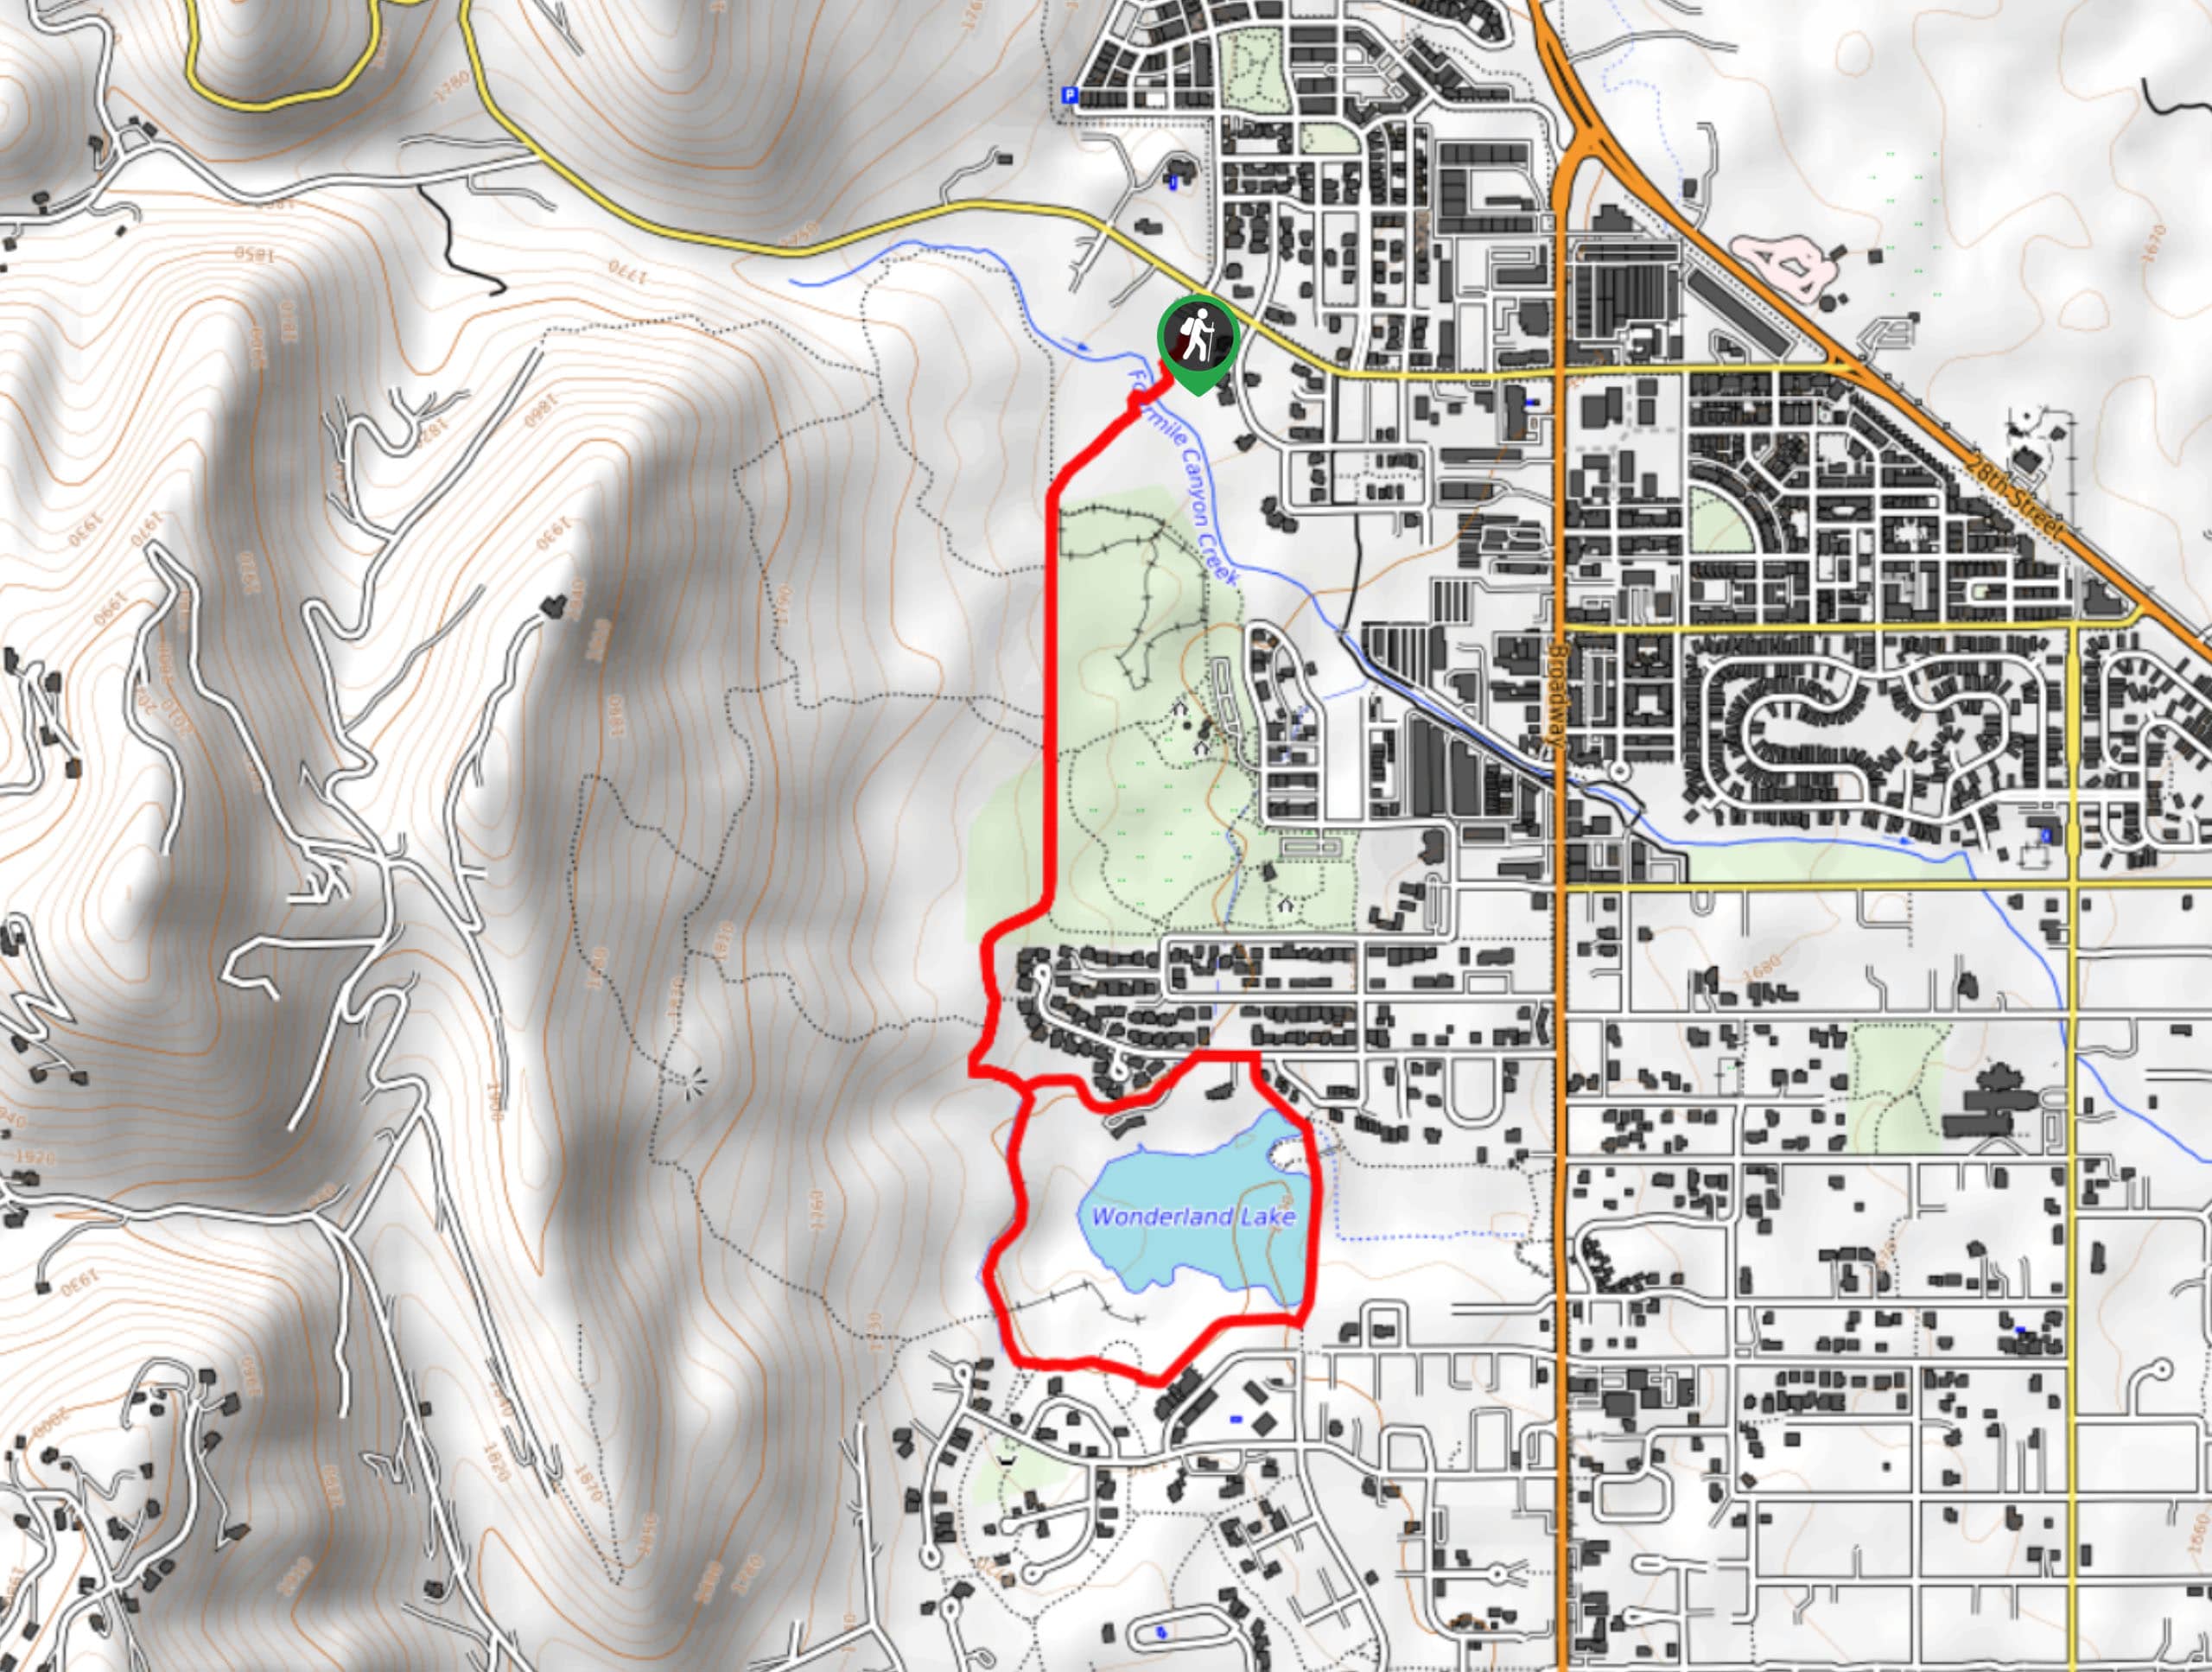 Wonderland Lake Loop via Foothills Trail Map